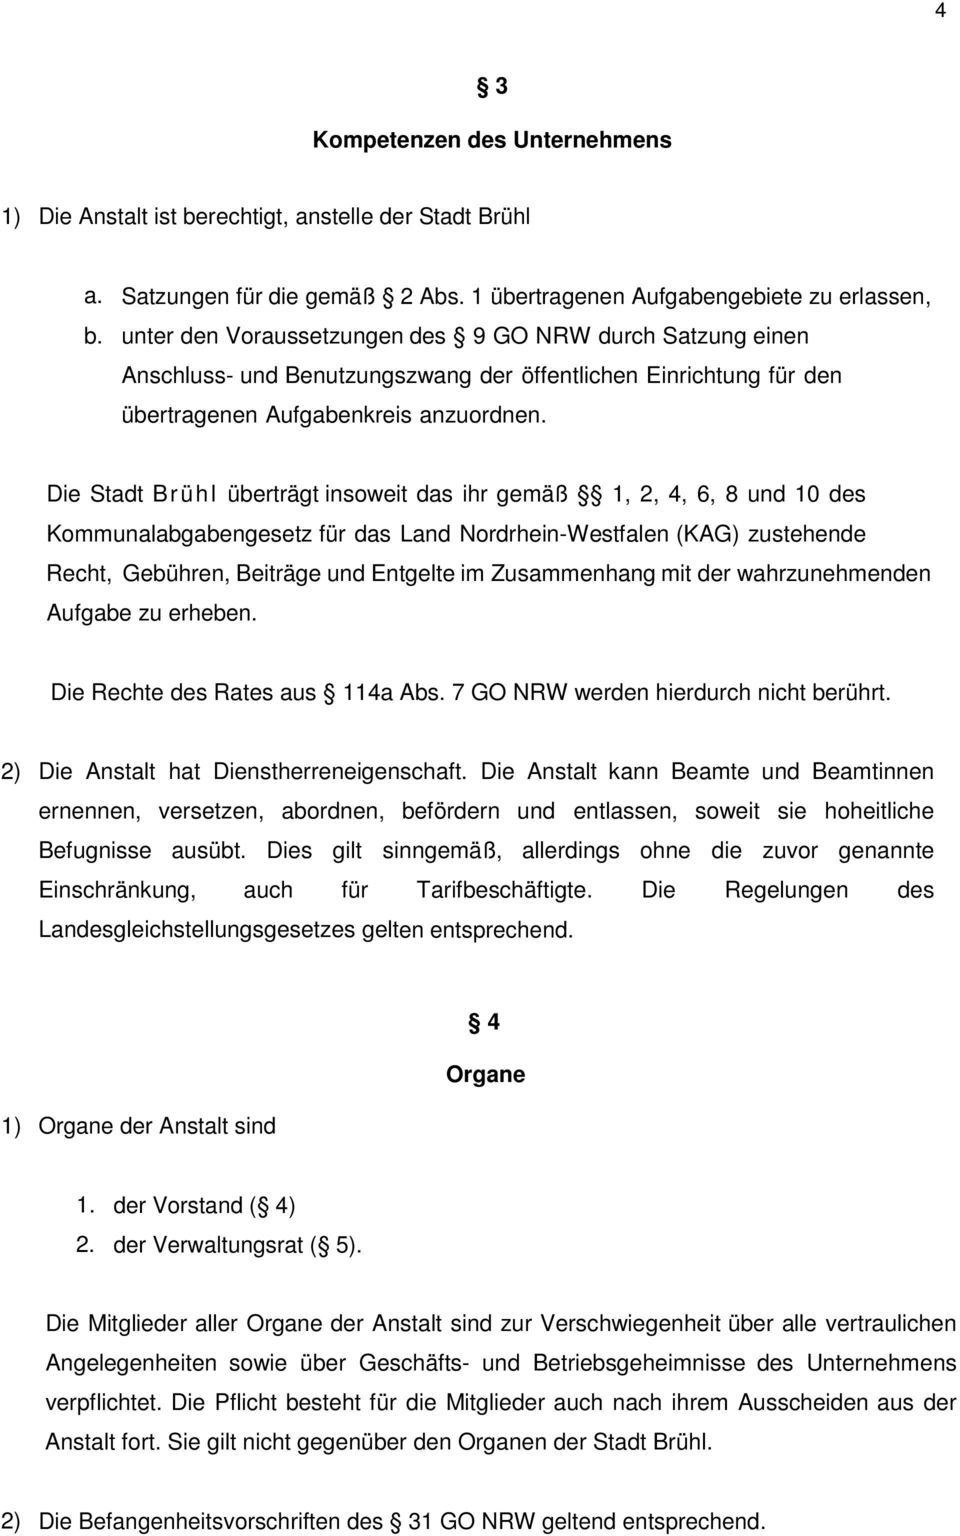 Die Stadt Brühl überträgt insoweit das ihr gemäß 1, 2, 4, 6, 8 und 10 des Kommunalabgabengesetz für das Land Nordrhein-Westfalen (KAG) zustehende Recht, Gebühren, Beiträge und Entgelte im